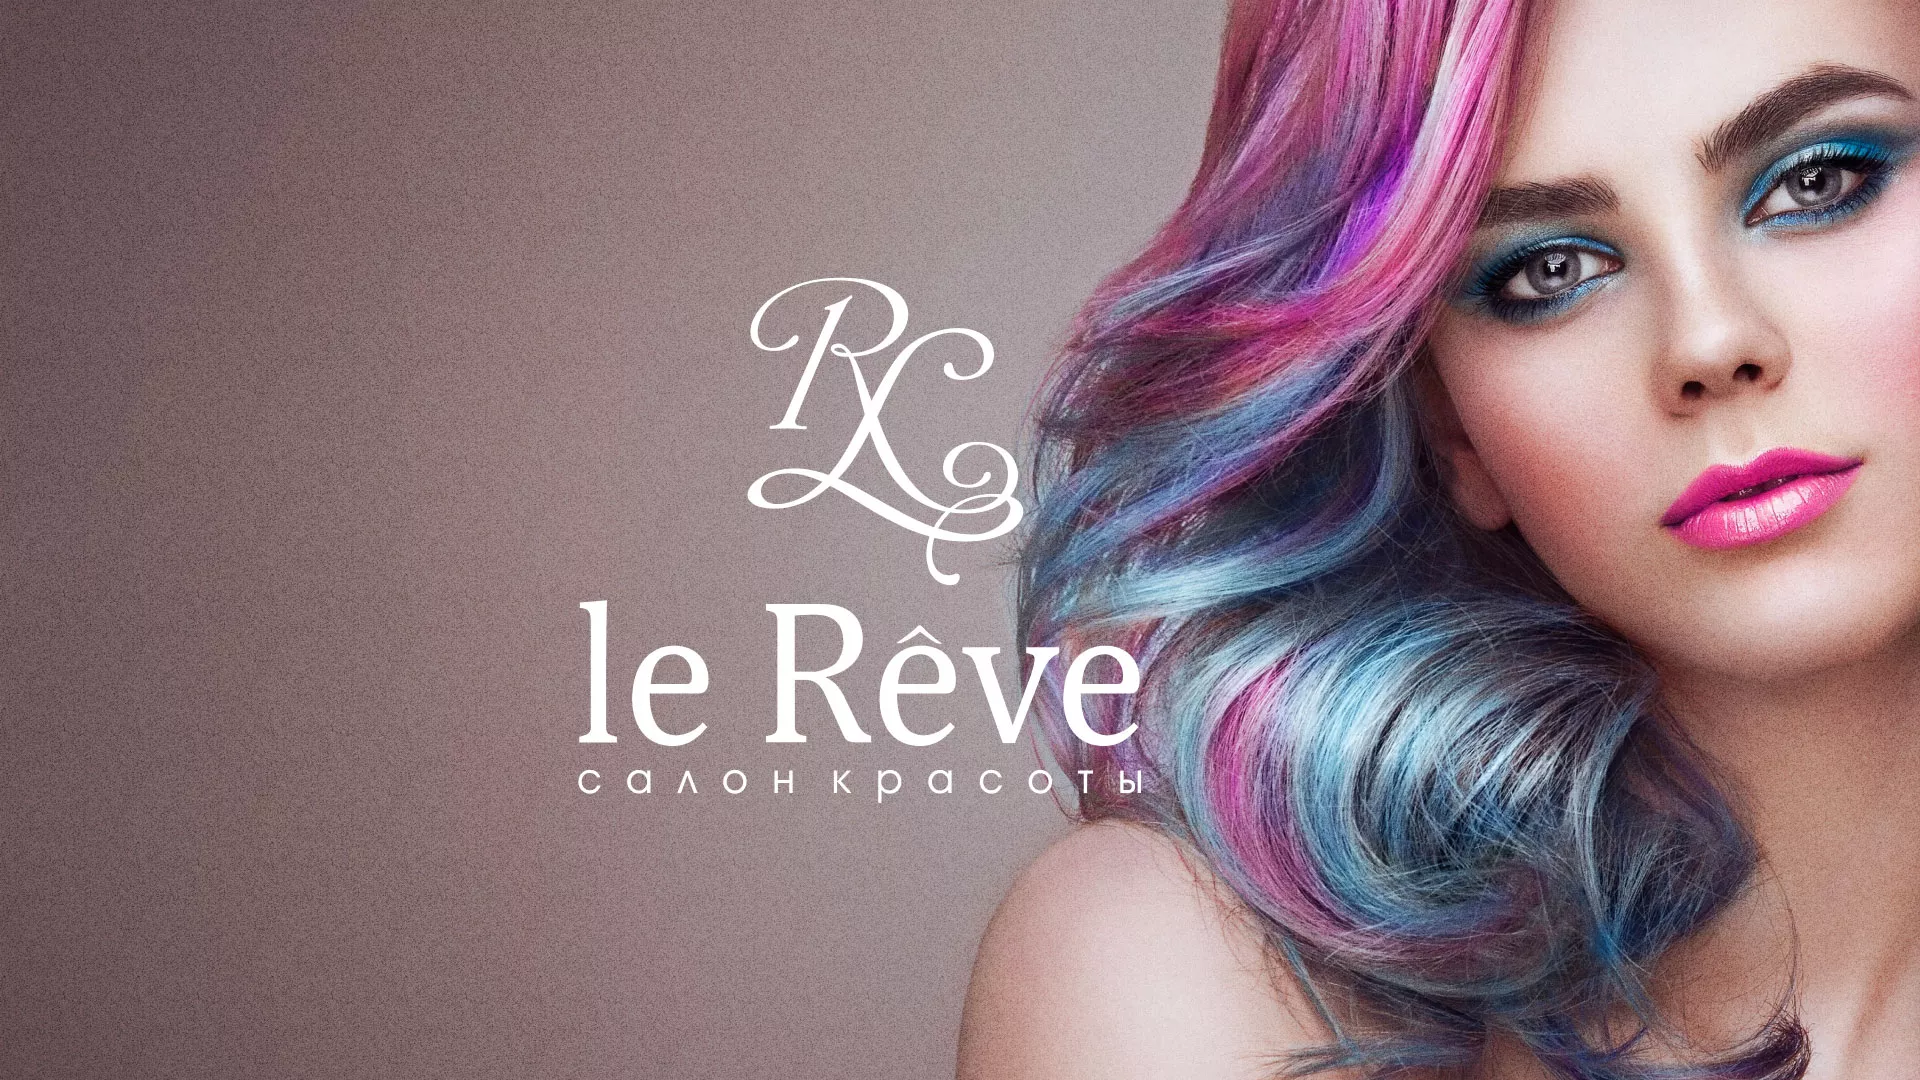 Создание сайта для салона красоты «Le Reve» в Малой Вишере